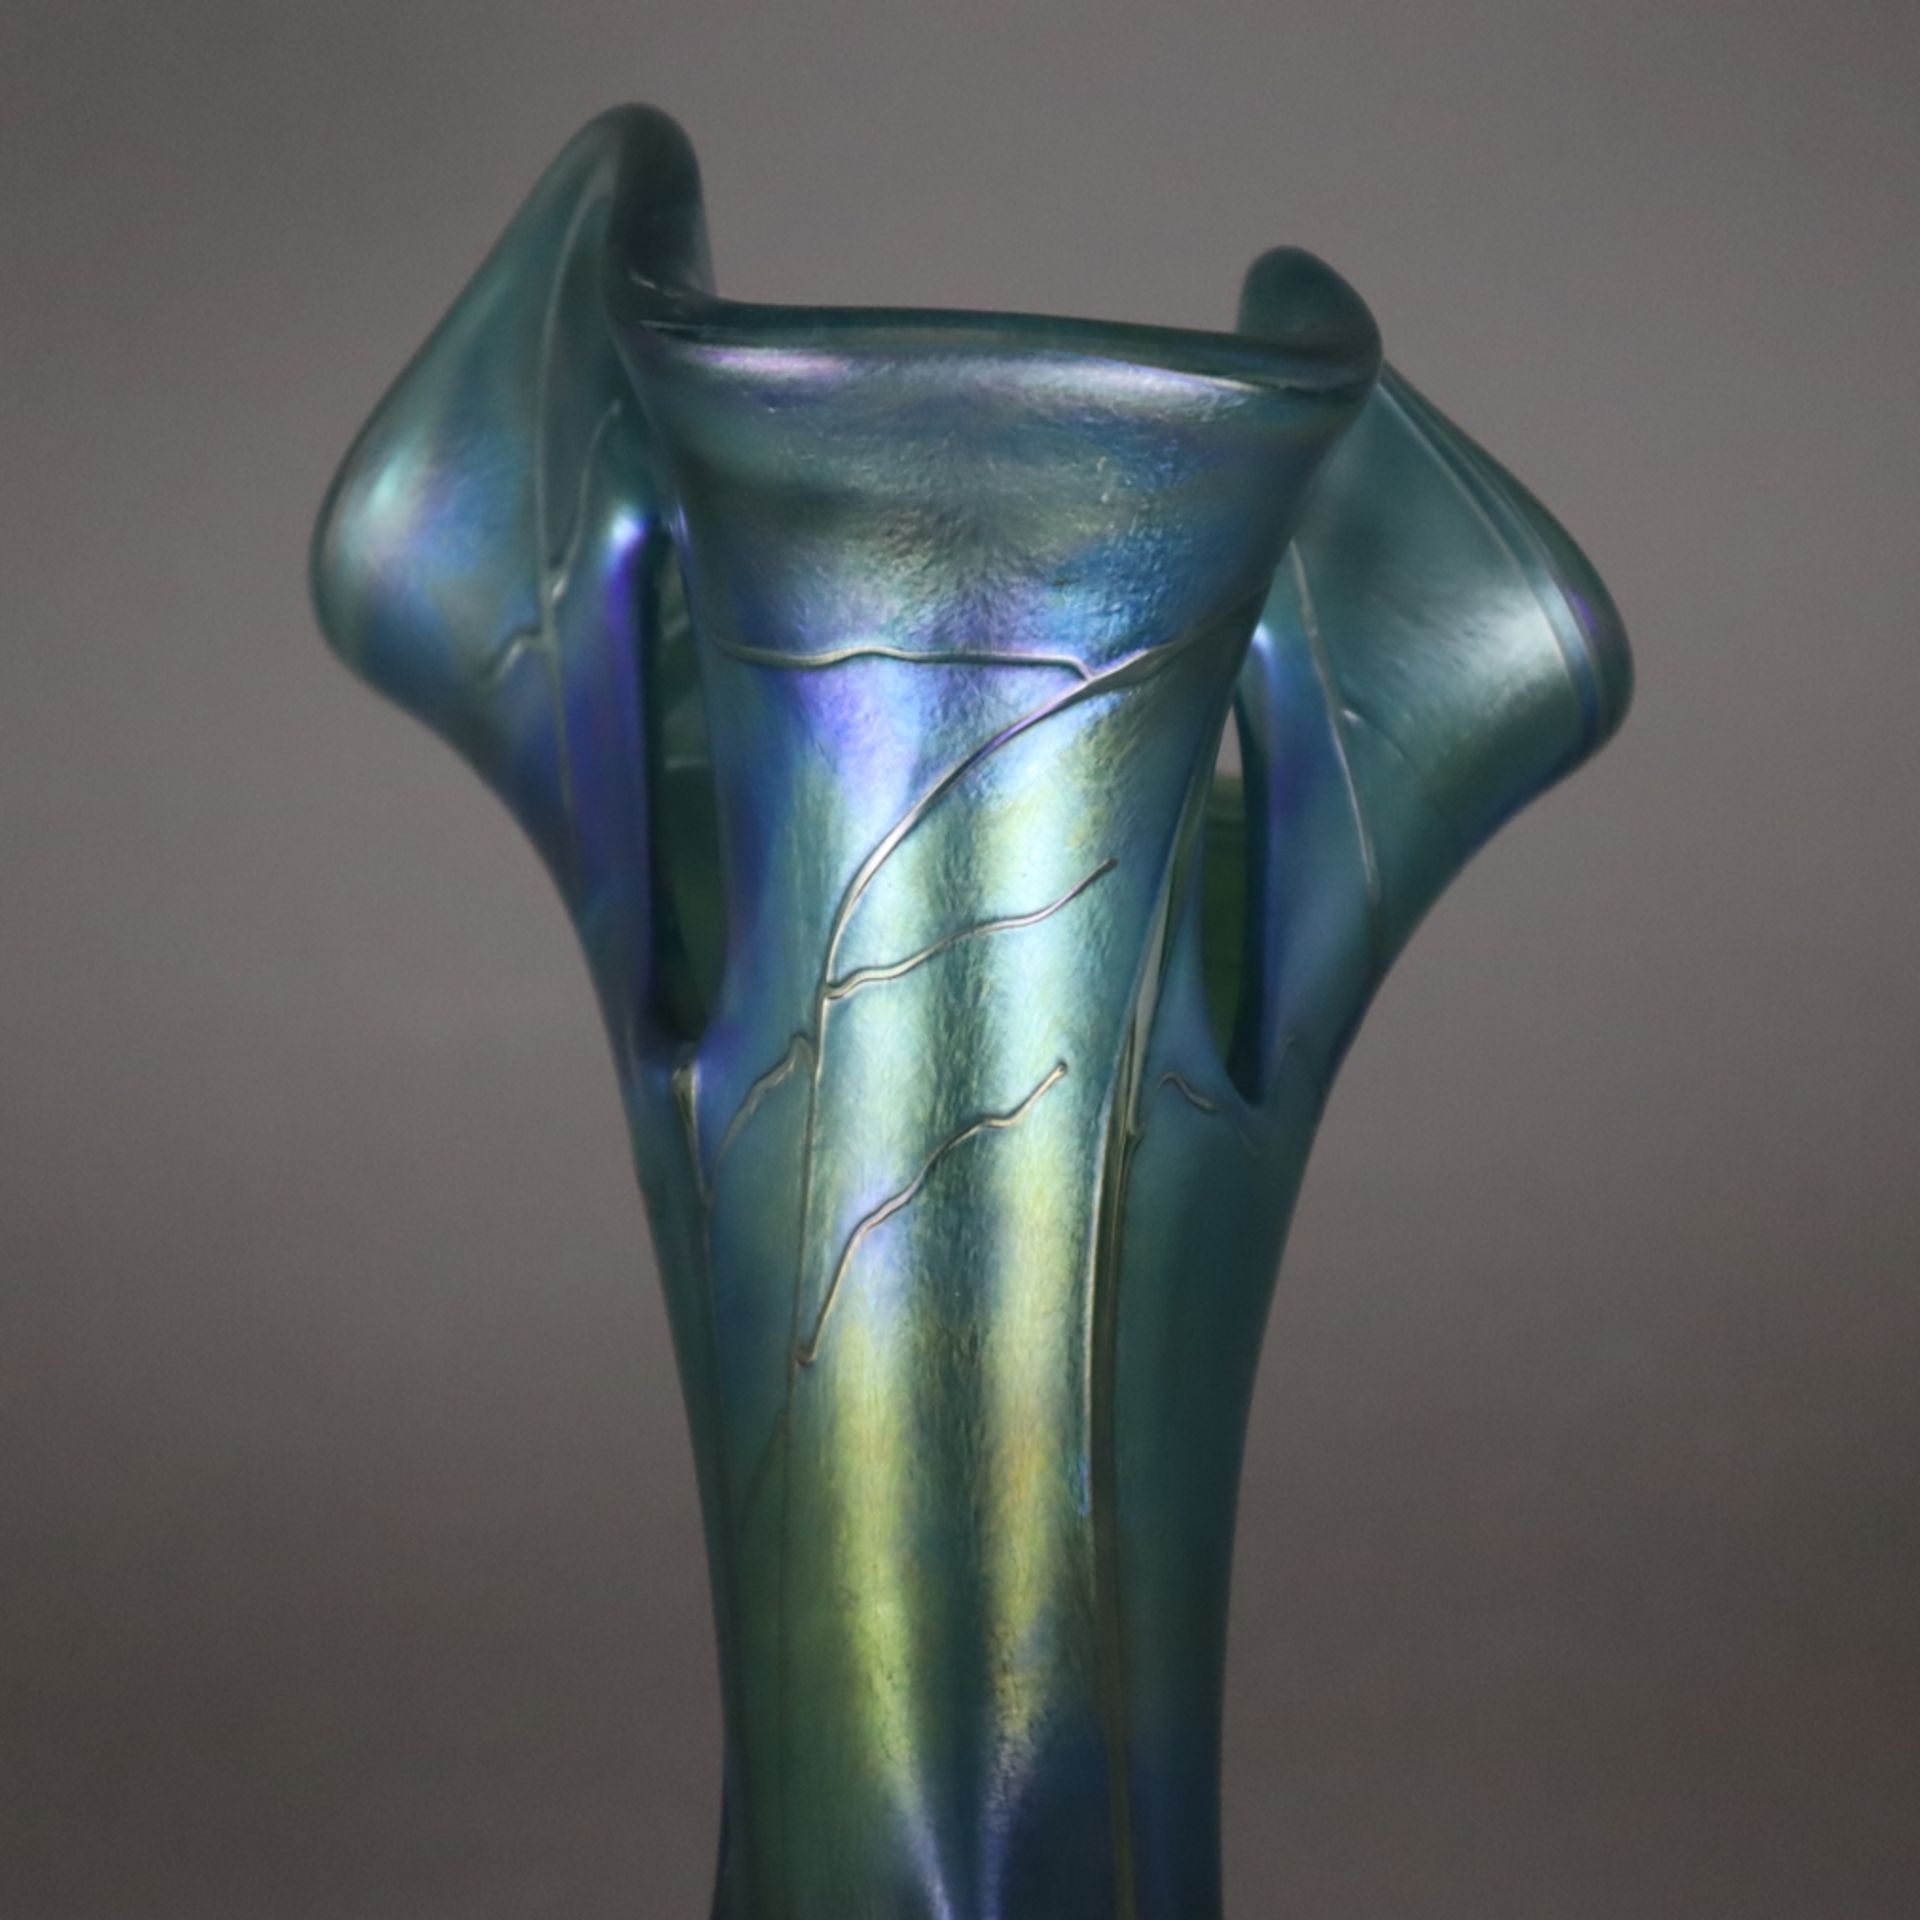 Jugendstil-Vase - Glas, teils irisierte Oberfläche, organische Form mit gewelltem, dreifach durchbr - Image 3 of 5